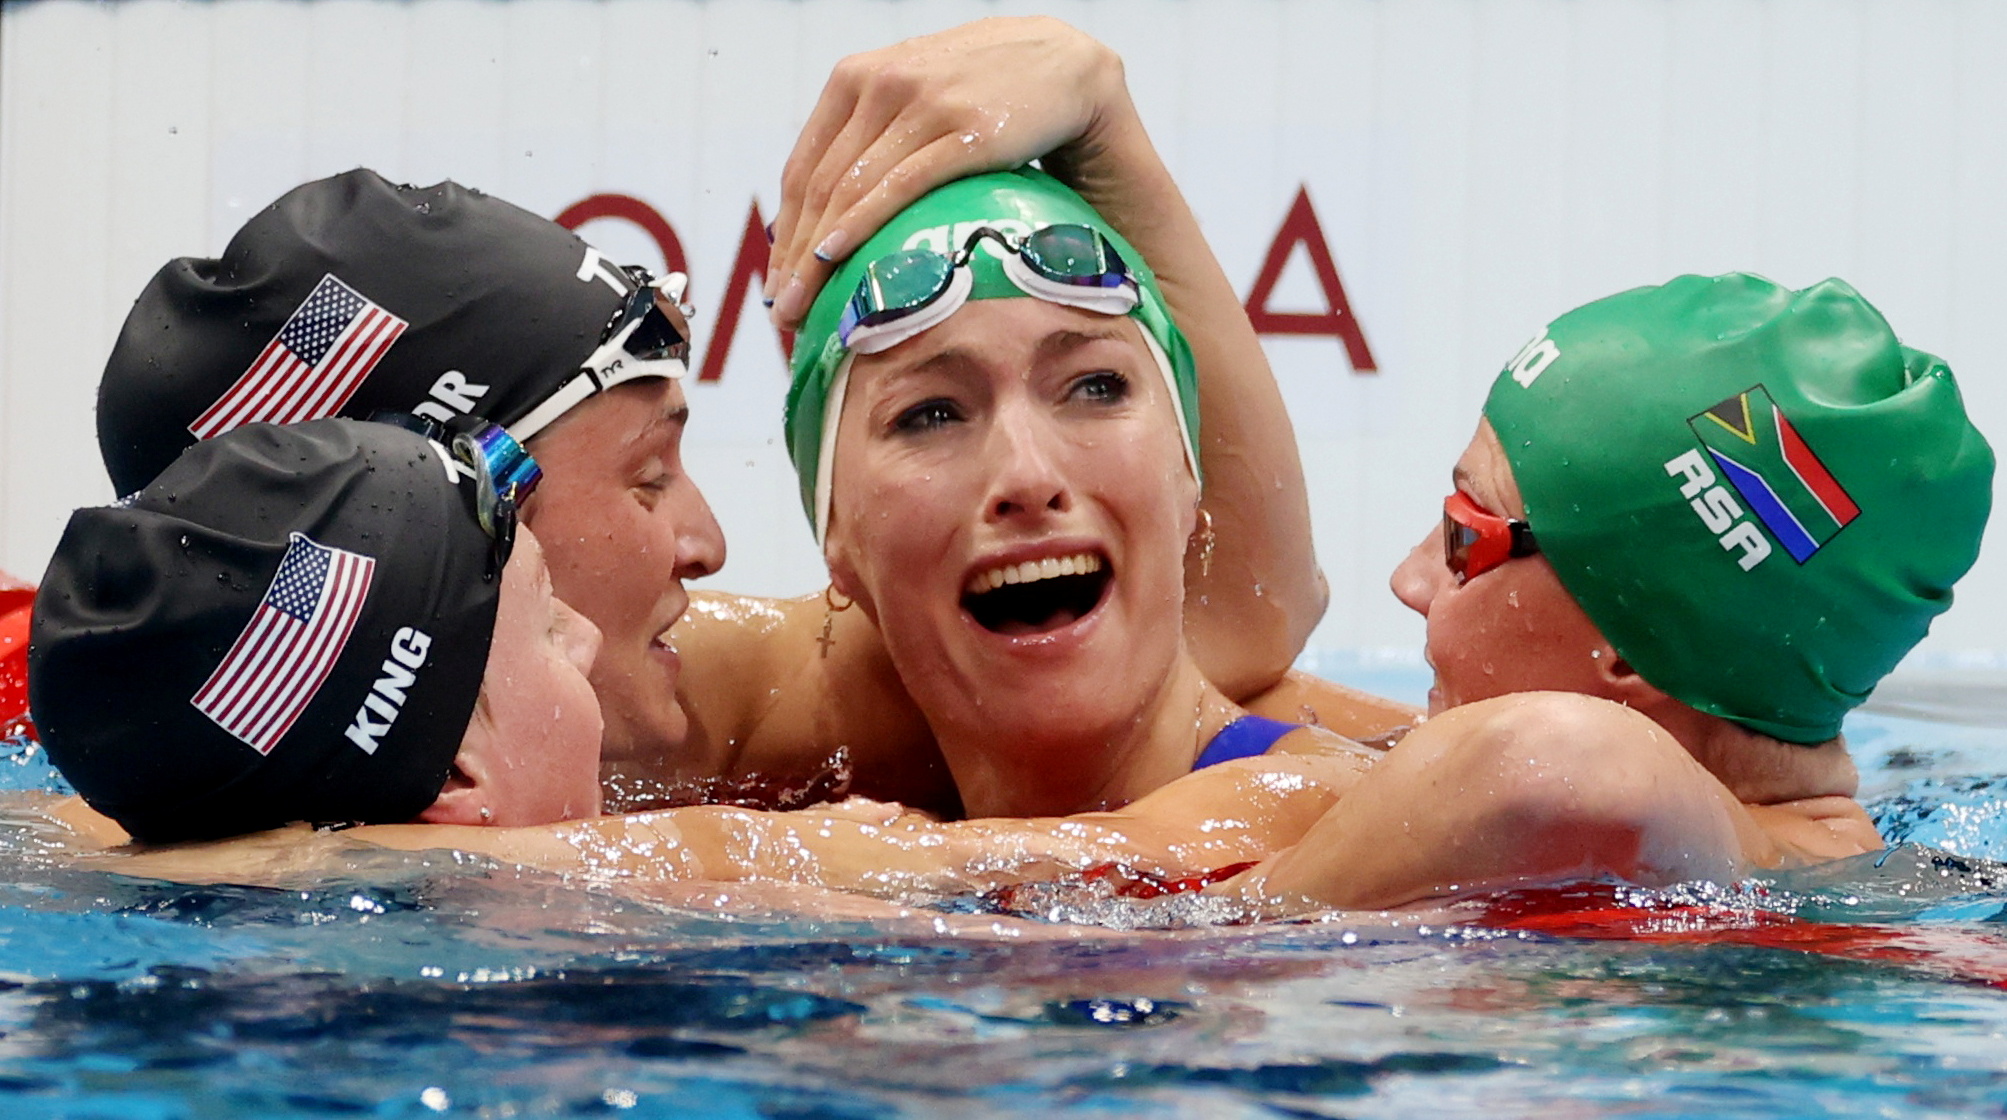 남아프리카 공화국의 수영 선수 Tatiana Schoenmaker가 7월 30일 200m 평영에서 금메달을 딴 후 동료 선수들(왼쪽부터 American Lily King, American Annie Lazur, 남아프리카 공화국 Kaylene Corbett)로부터 축하를 받고 있습니다.